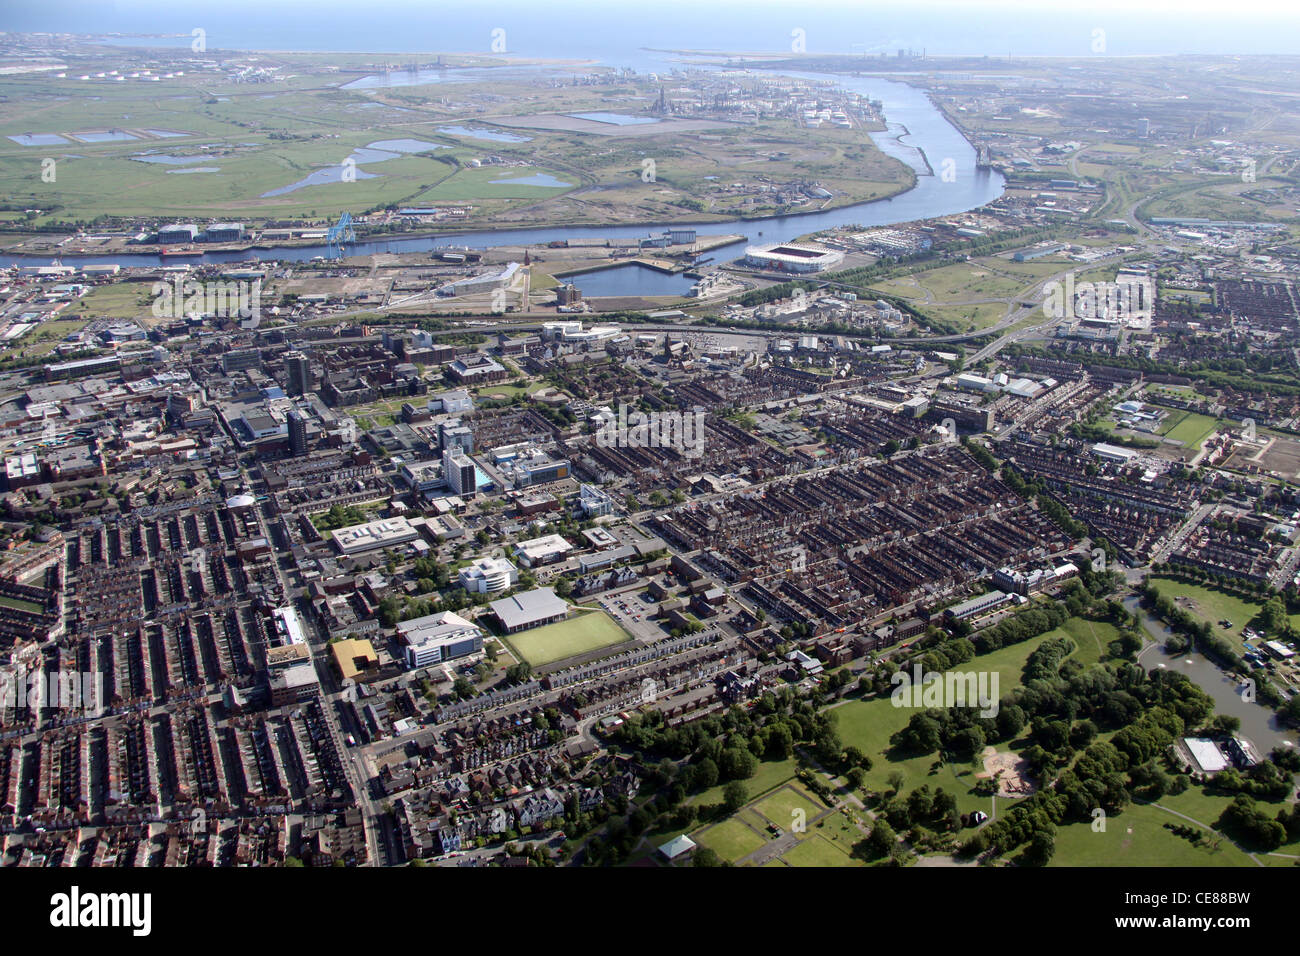 Vista aerea del centro di Middlesbrough con la Teesside University prominente in primo piano guardando verso il fiume Tees verso il Mare del Nord Foto Stock